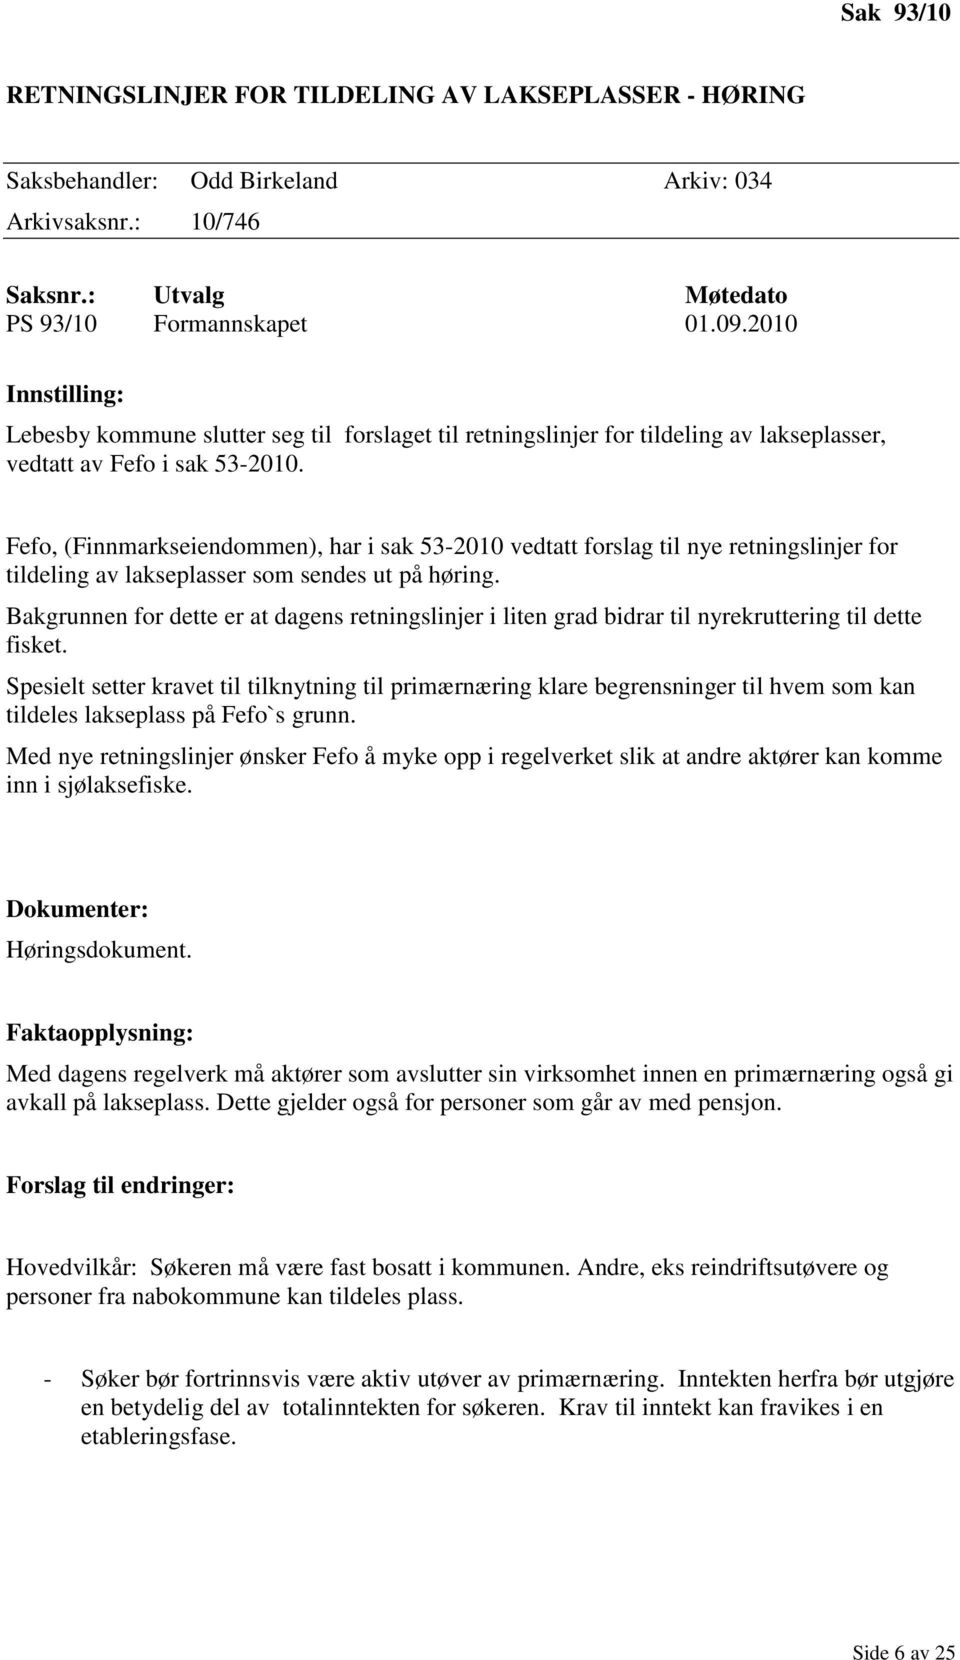 Fefo, (Finnmarkseiendommen), har i sak 53-2010 vedtatt forslag til nye retningslinjer for tildeling av lakseplasser som sendes ut på høring.